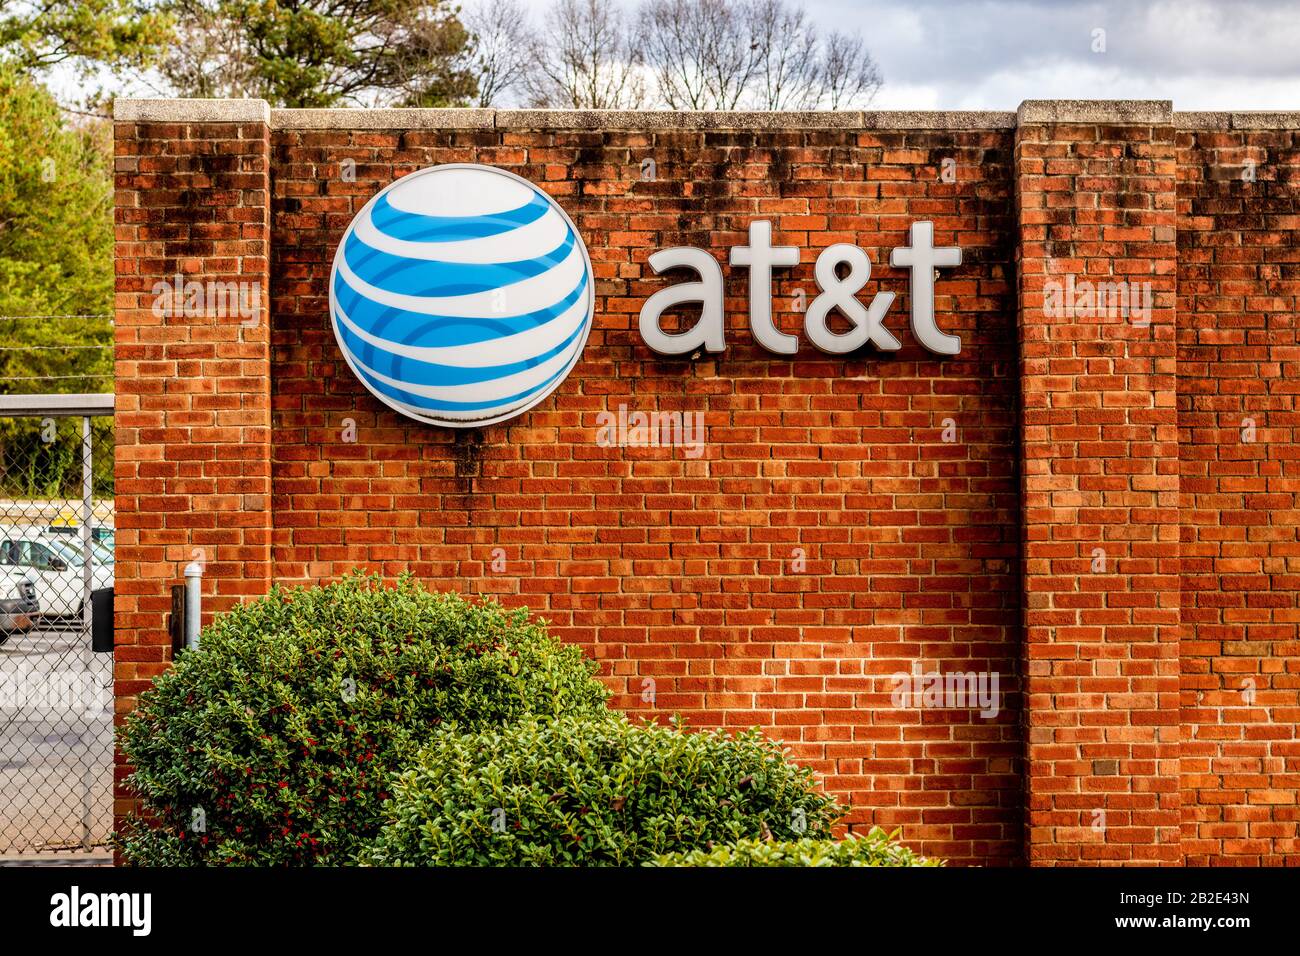 Charlotte, NC/USA - 14. Dezember 2019: Mittlerer horizontaler Schuss von Marke "AT&T" und Logo auf einer roten Ziegelwand mit Bäumen, geparkten Autos und Sturm c Stockfoto